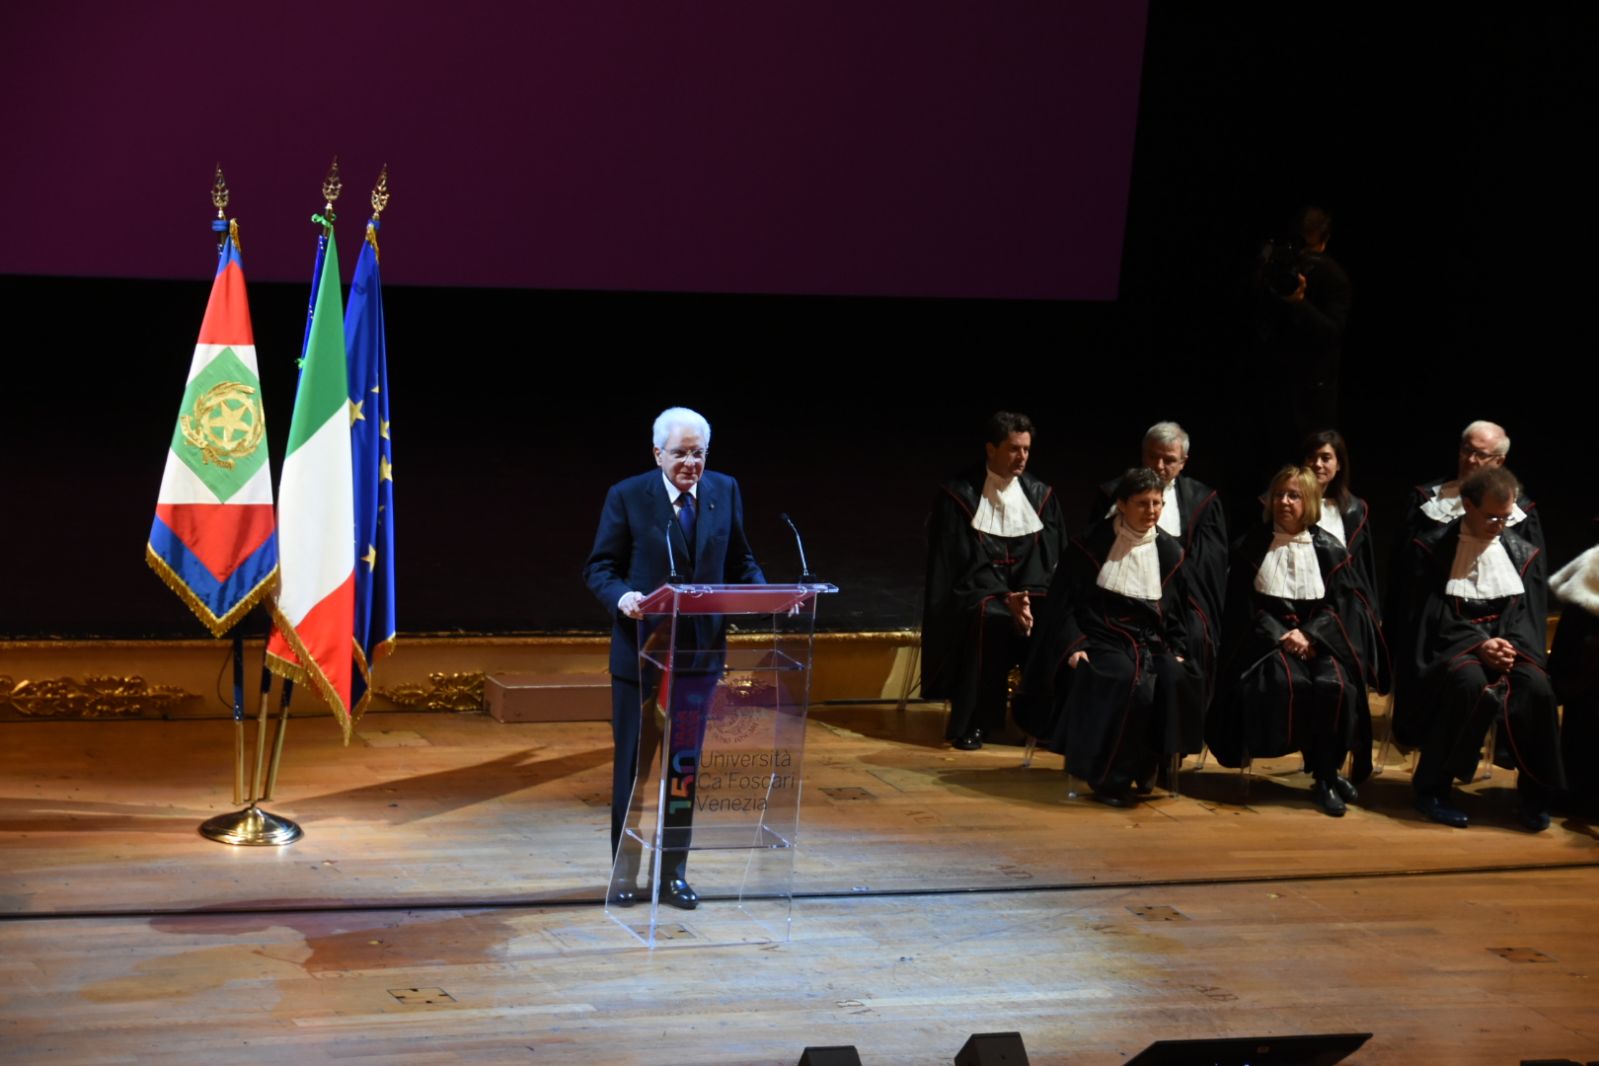 Il presidente della Repubblica Mattarella a Venezia per l'inaugurazione del 150° anno accademico di Ca' Foscari